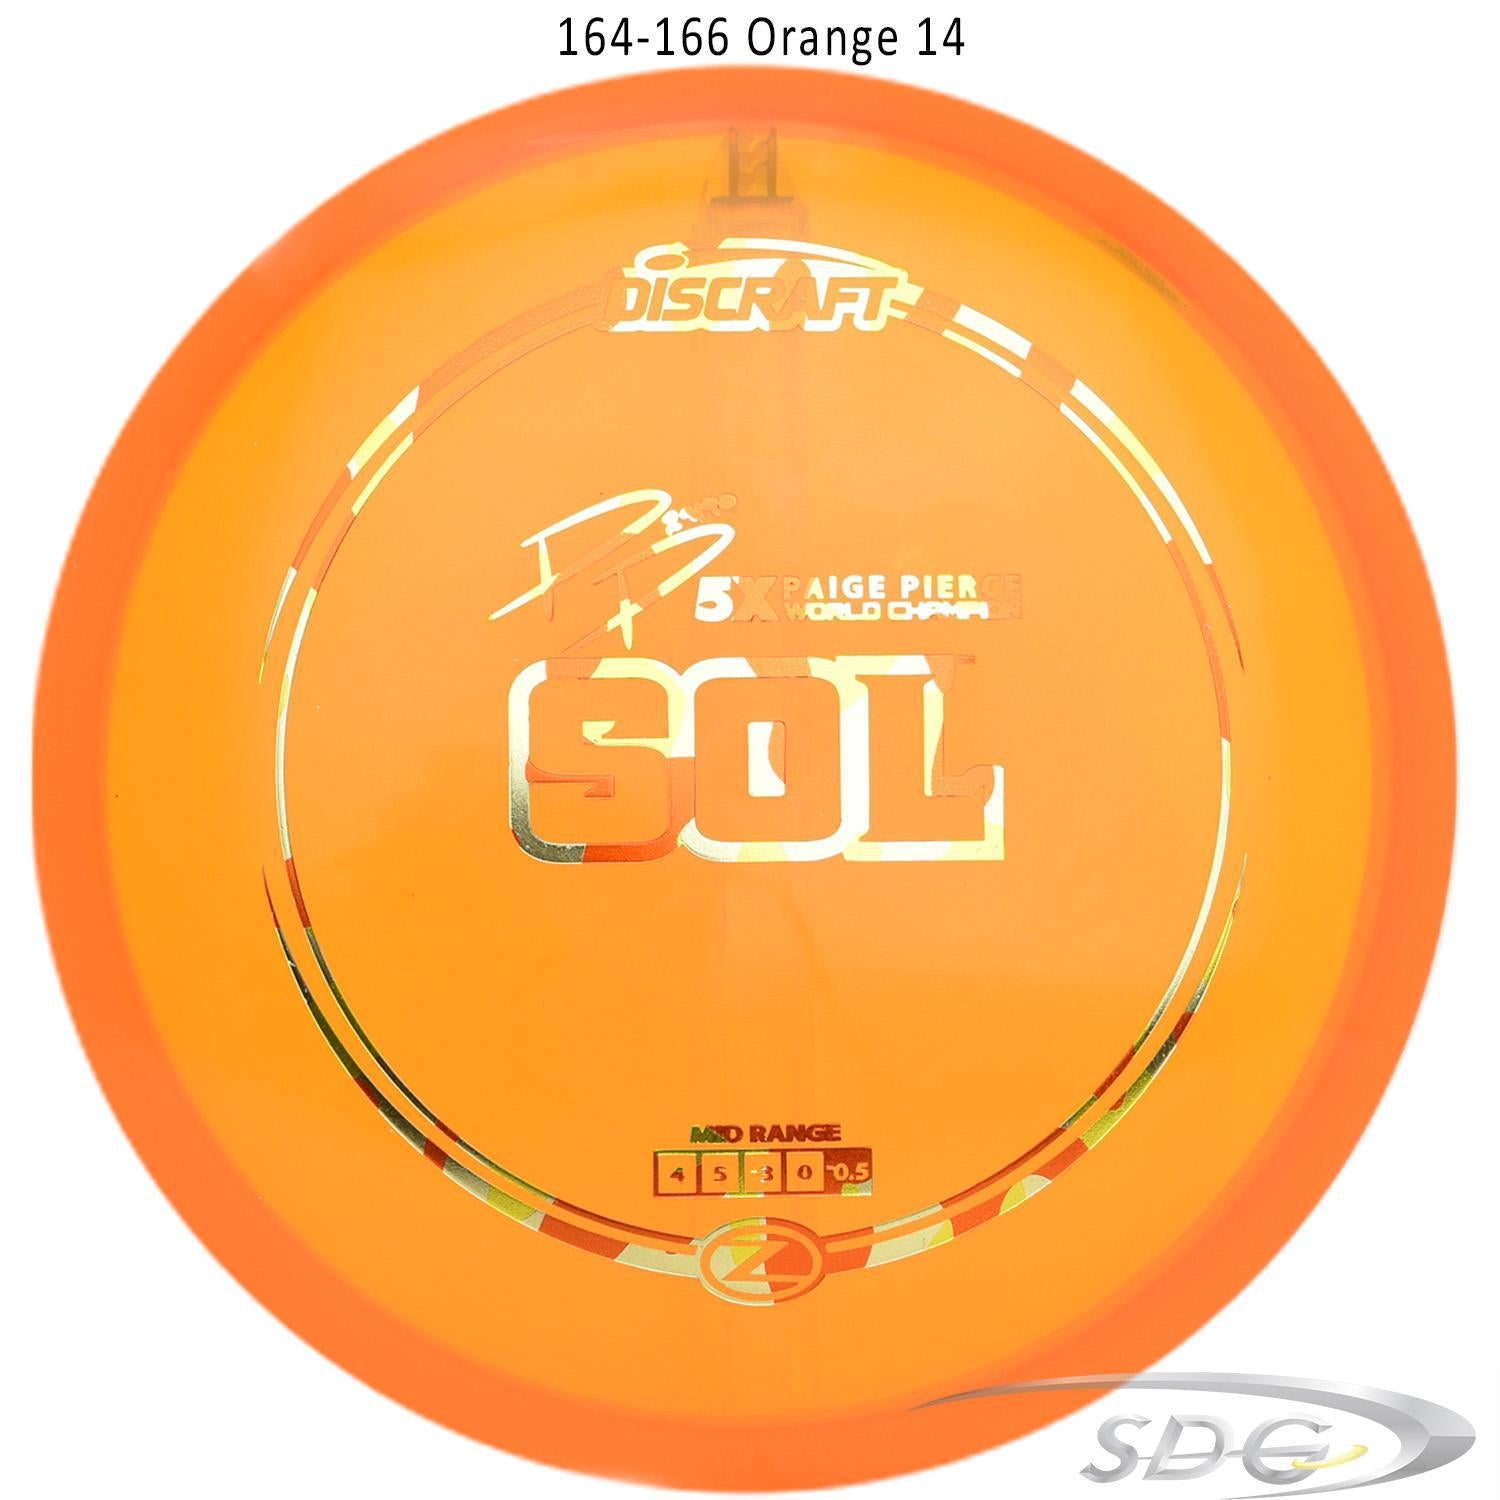 discraft-z-line-sol-paige-pierce-signature-disc-golf-mid-range-169-160-weights 164-166 orange 14 